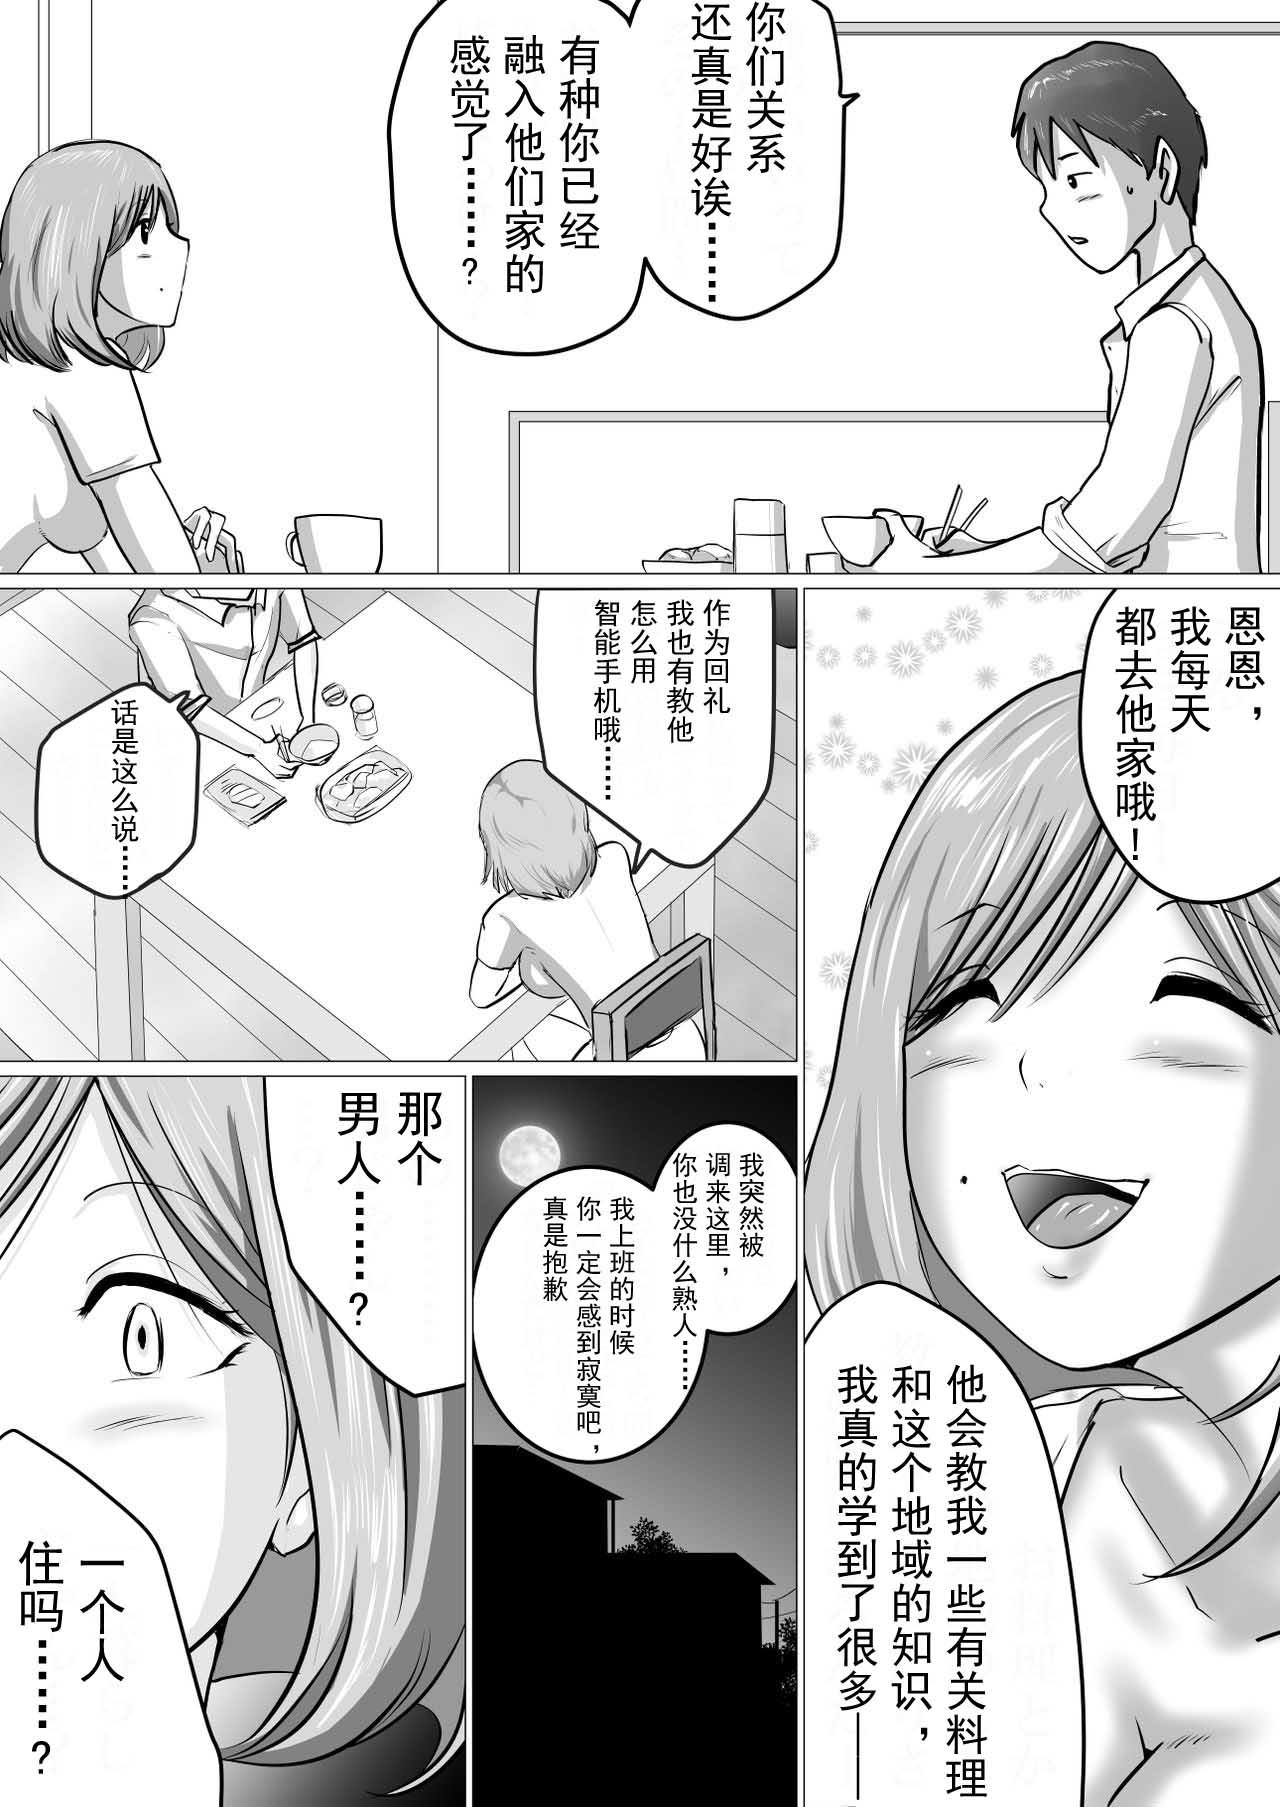 Butthole [Makoto Shiyaka] Rinjin ni Dakare Tsuzukeru to iu koto[Chinese]【不可视汉化】 - Original Brazilian - Page 3